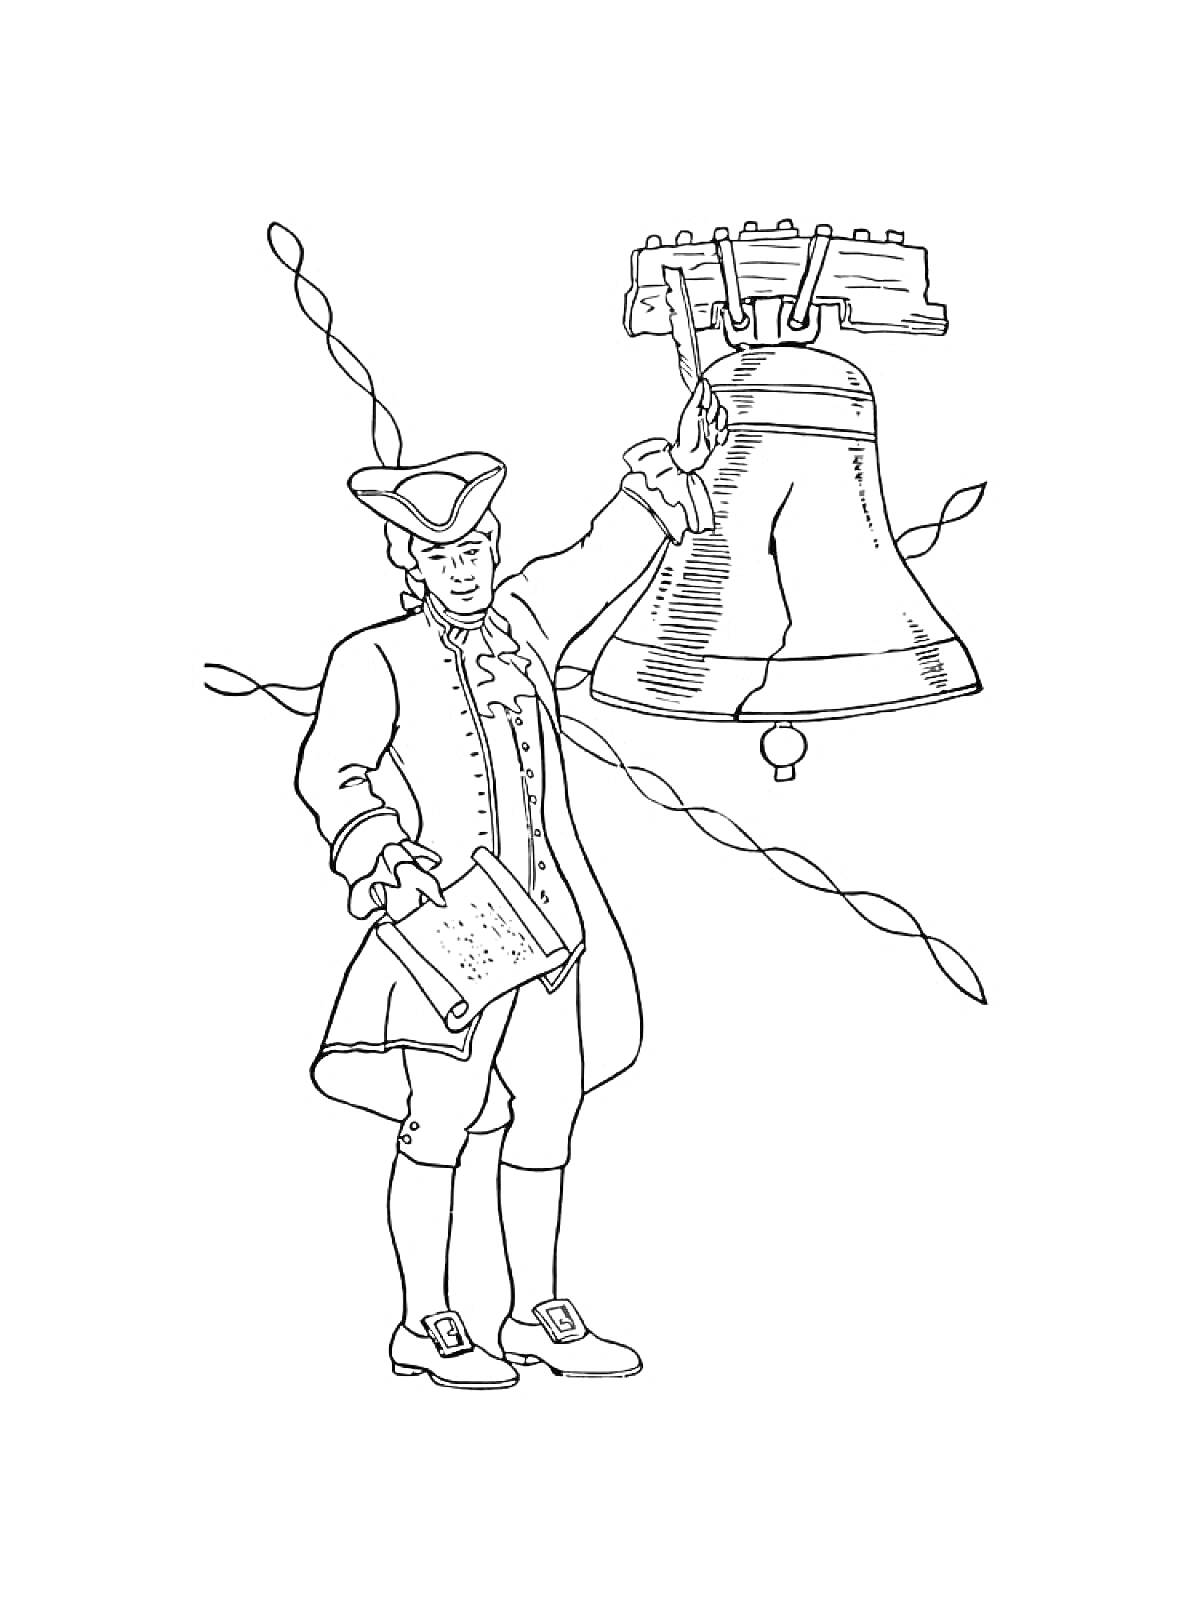 Человек в историческом костюме держит верёвку, привязанную к большому колоколу, второй рукой держит документ с текстом